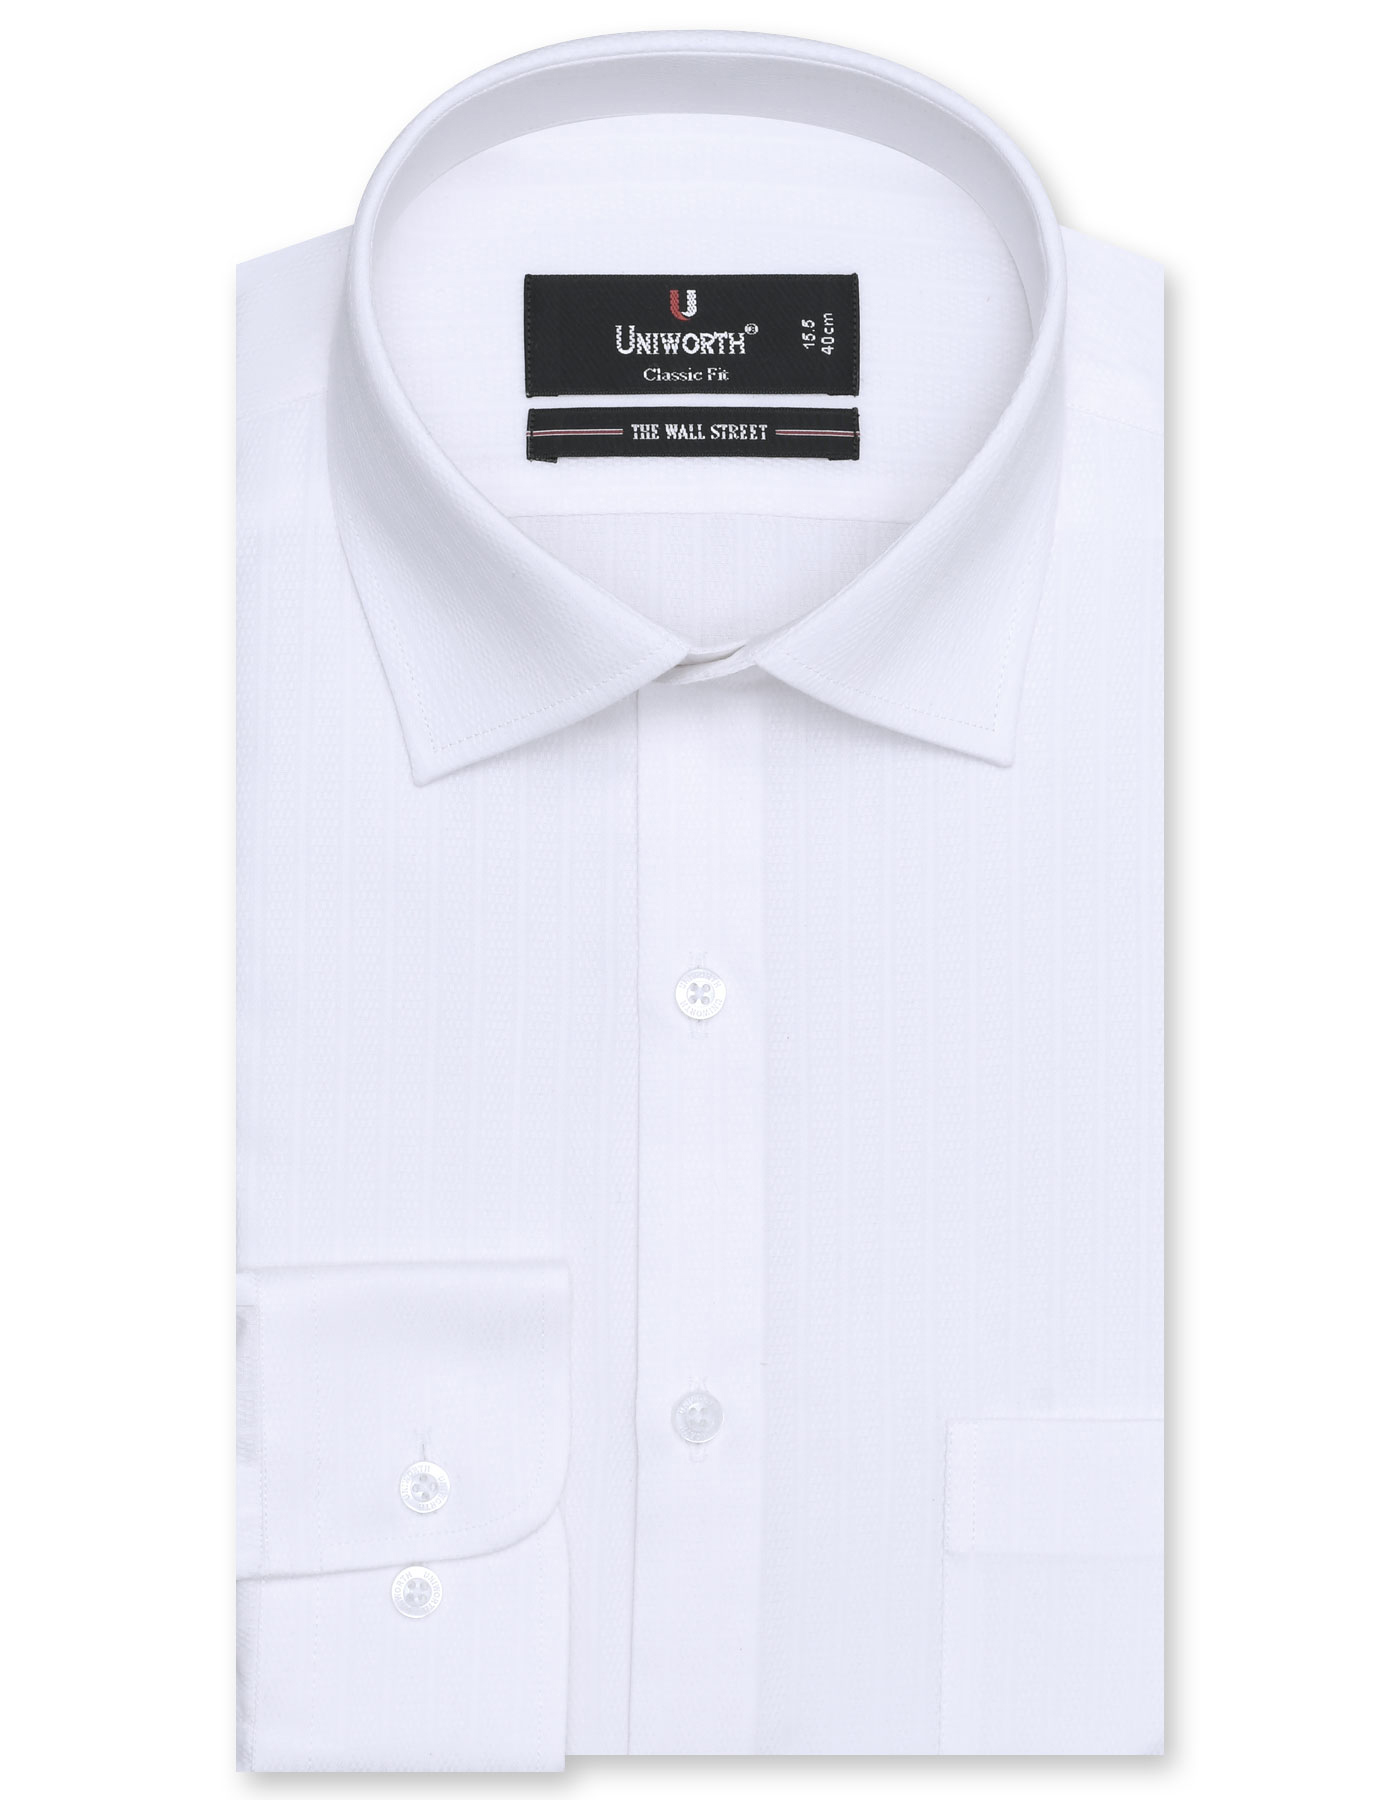 White Formal Shirt For Men